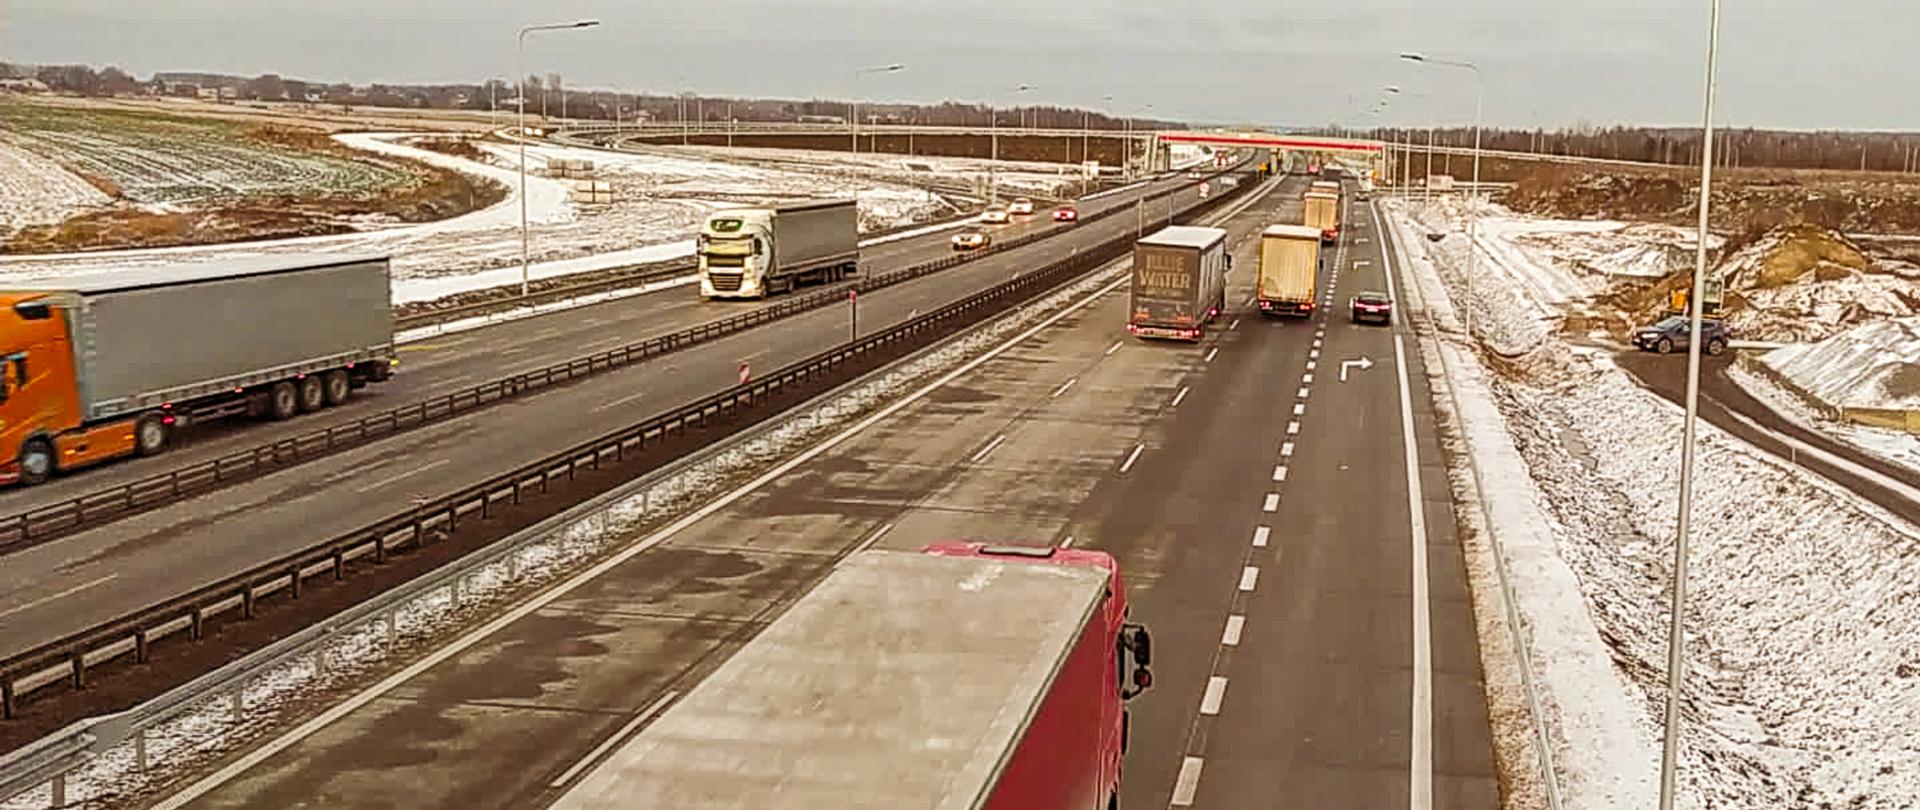 Fotografia dwujezdniowej autostrady A1 z poziomu obiektu inżynierskiego. Na fotografii widoczne jezdnie, po których odbywa się dwukierunkowo ruch. W tle widoczny obiekt mostowy przecinający poprzecznie autostradę. Na obrzeżach fotografii widoczne prace ziemne w aurze zimowe, pobocza pokryte śniegiem.
